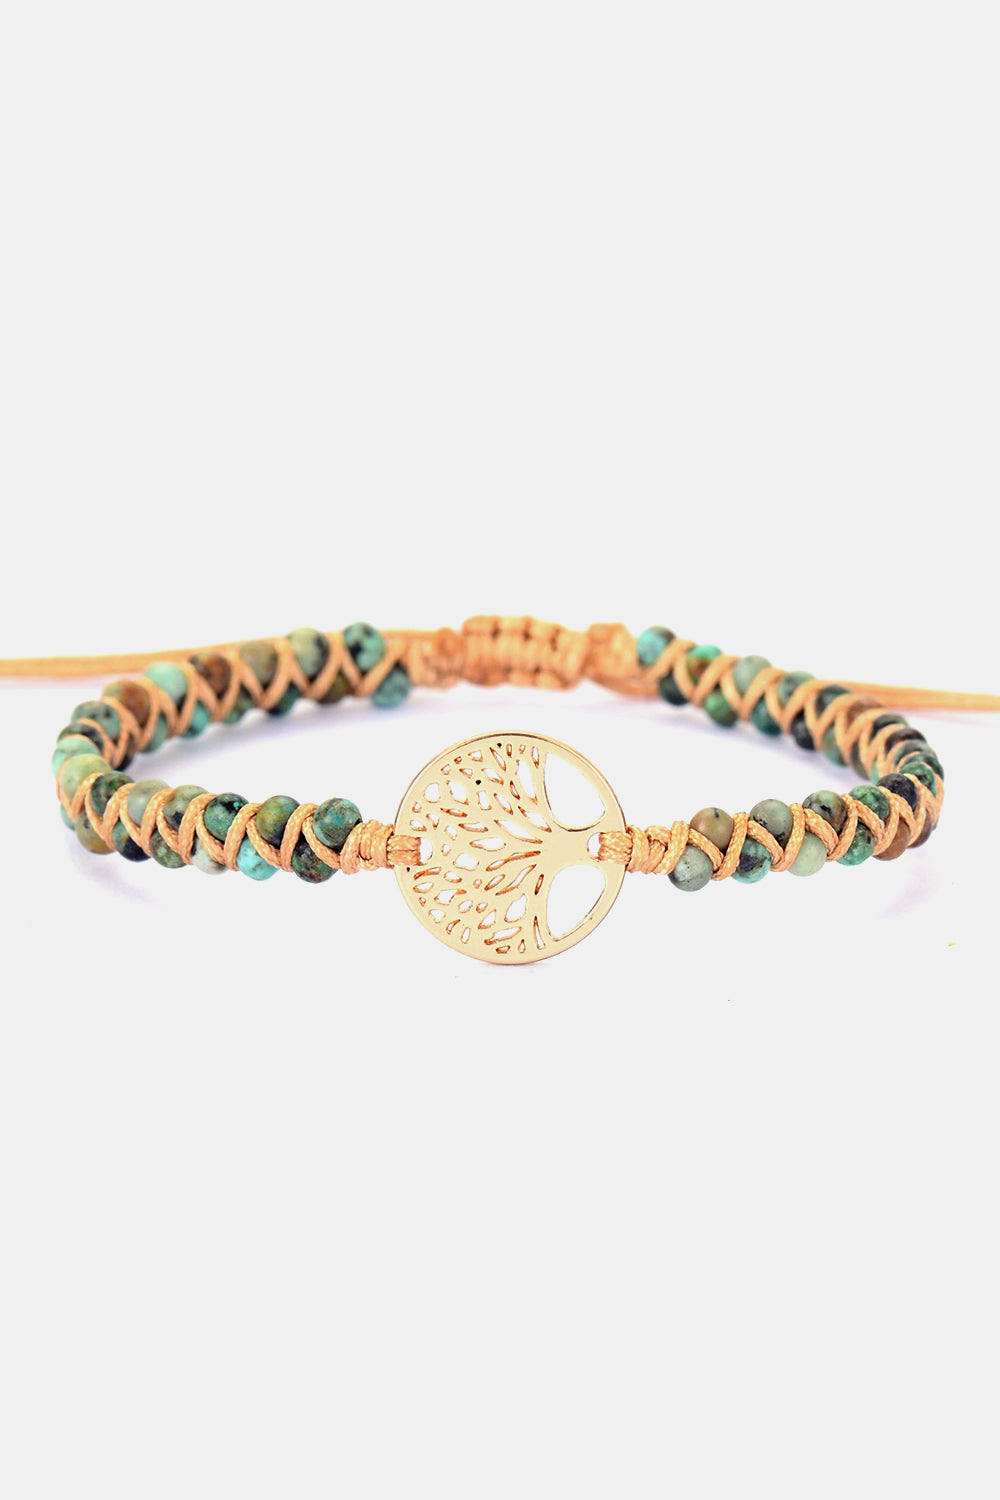 Handmade Tree Shape Beaded Copper Bracelet - Gold / One Size - Women’s Jewelry - Bracelets - 5 - 2024